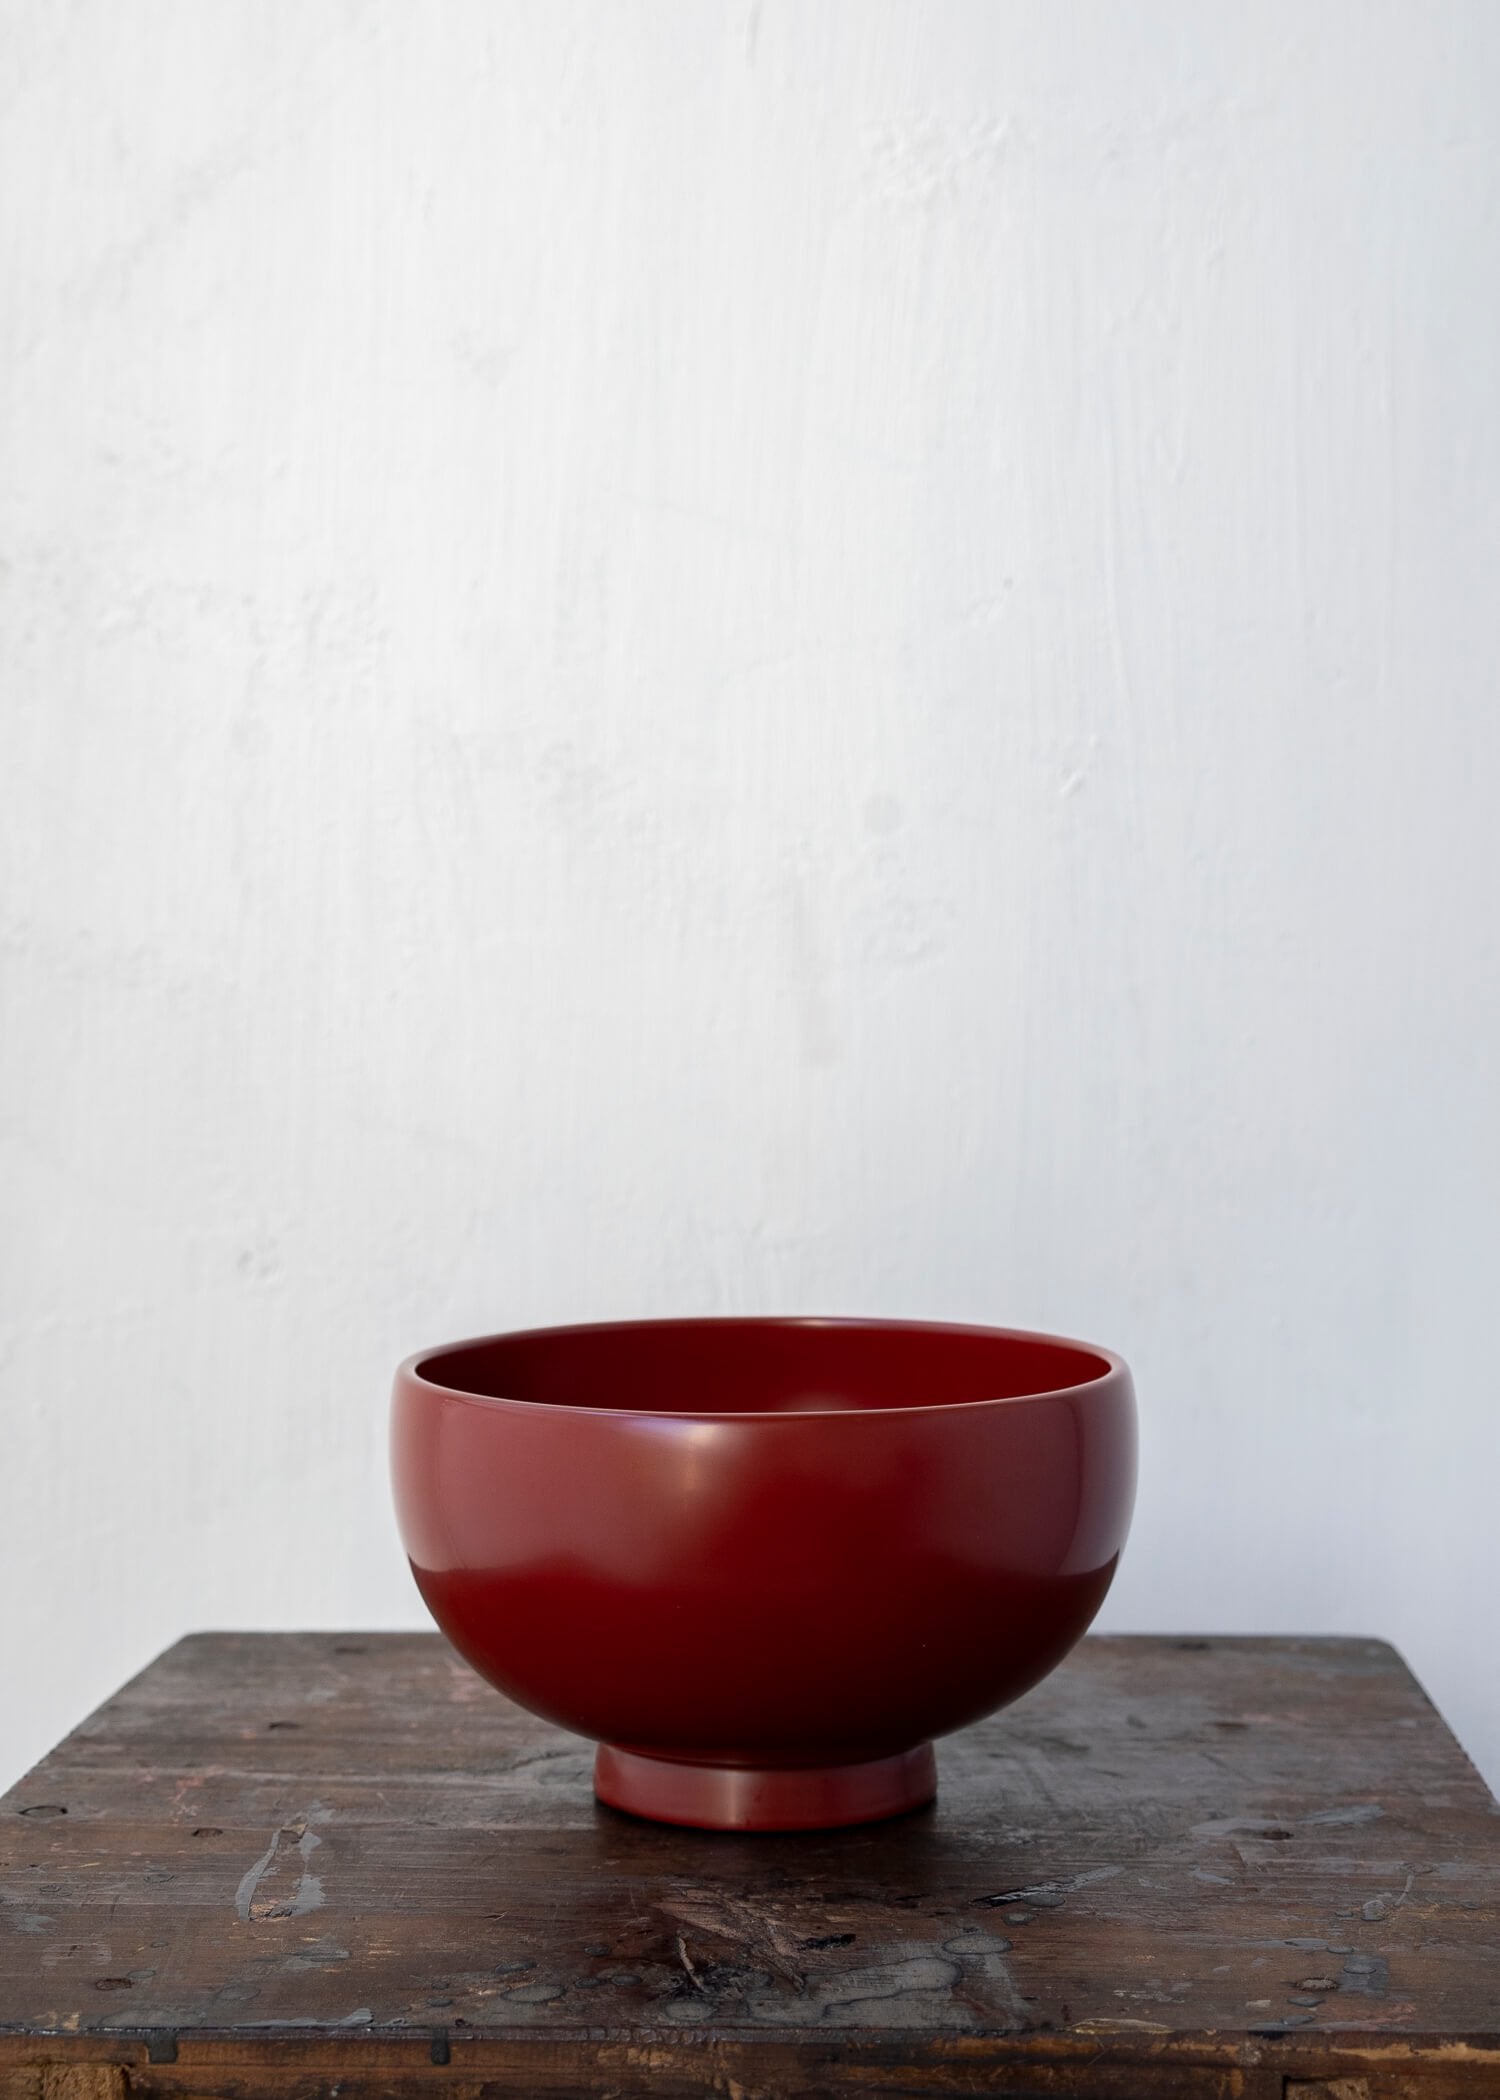 Kimio Onodera / "Mori Bowl" / Vermillion / Lacquerware